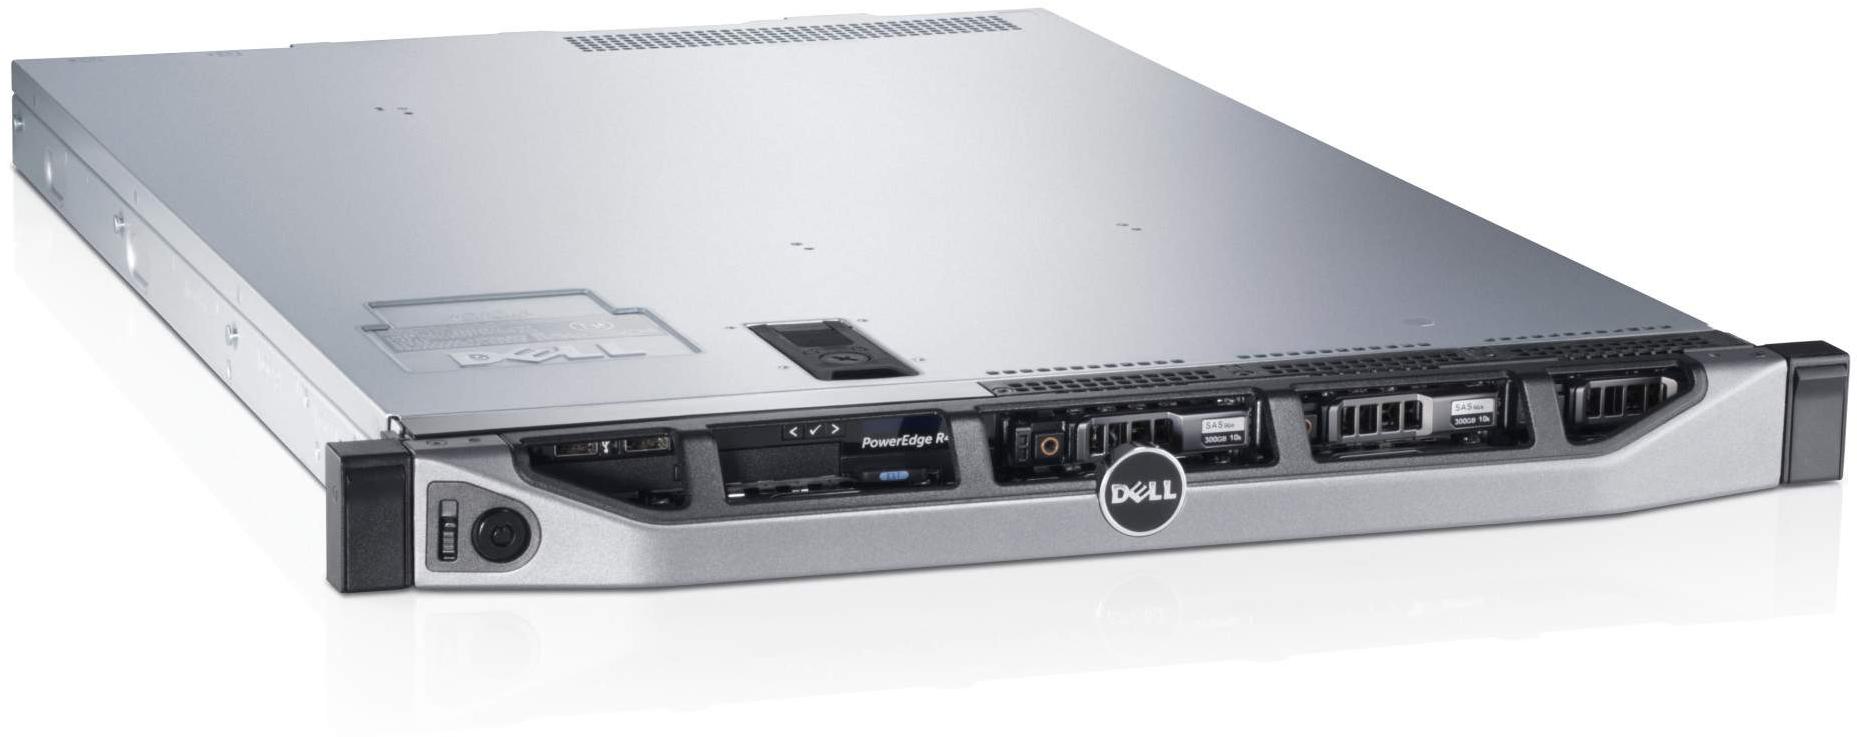     Dell PowerEdge R620 (210-39504-119)  2